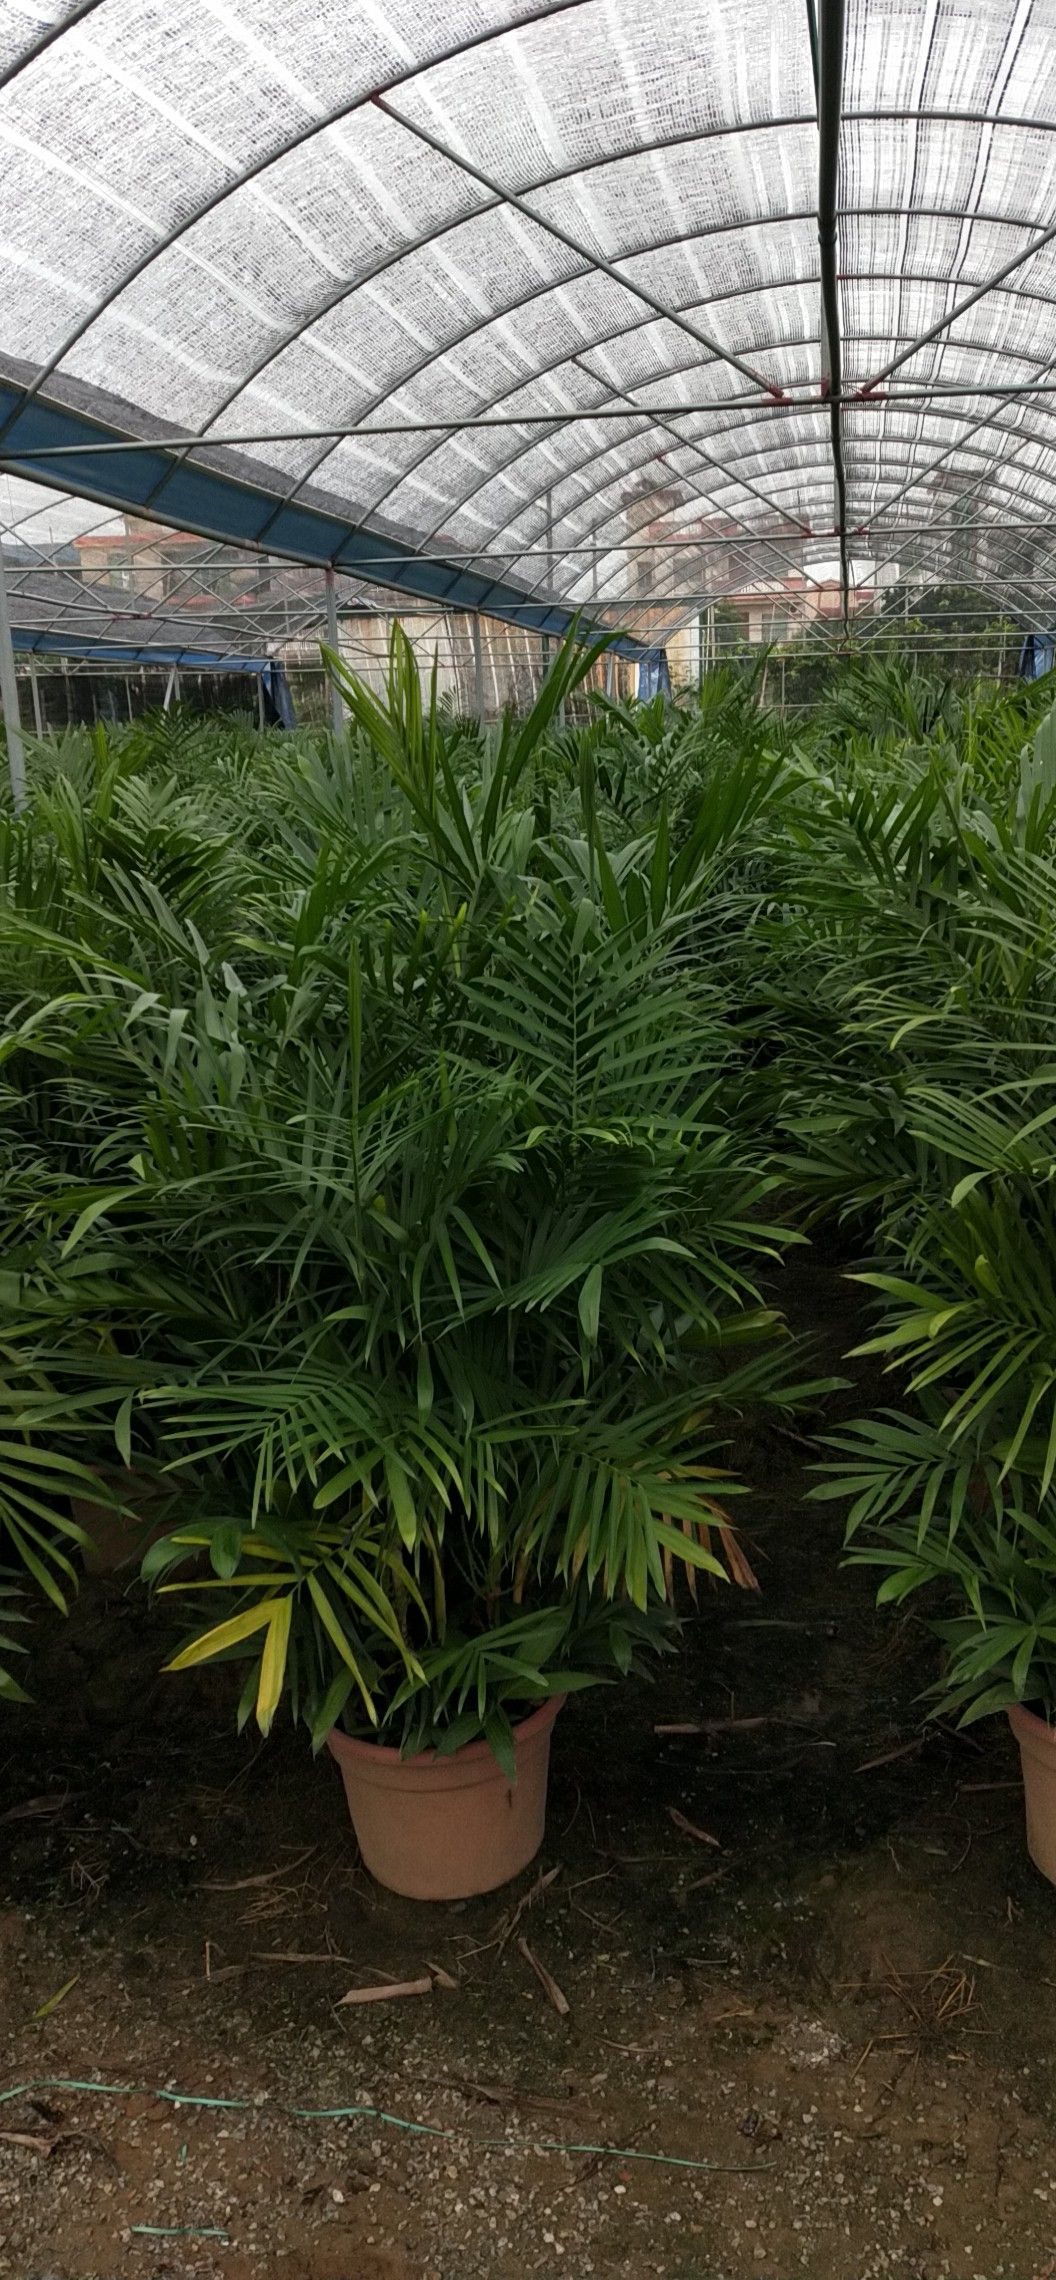 夏威夷椰子盆栽 广州夏威夷竹